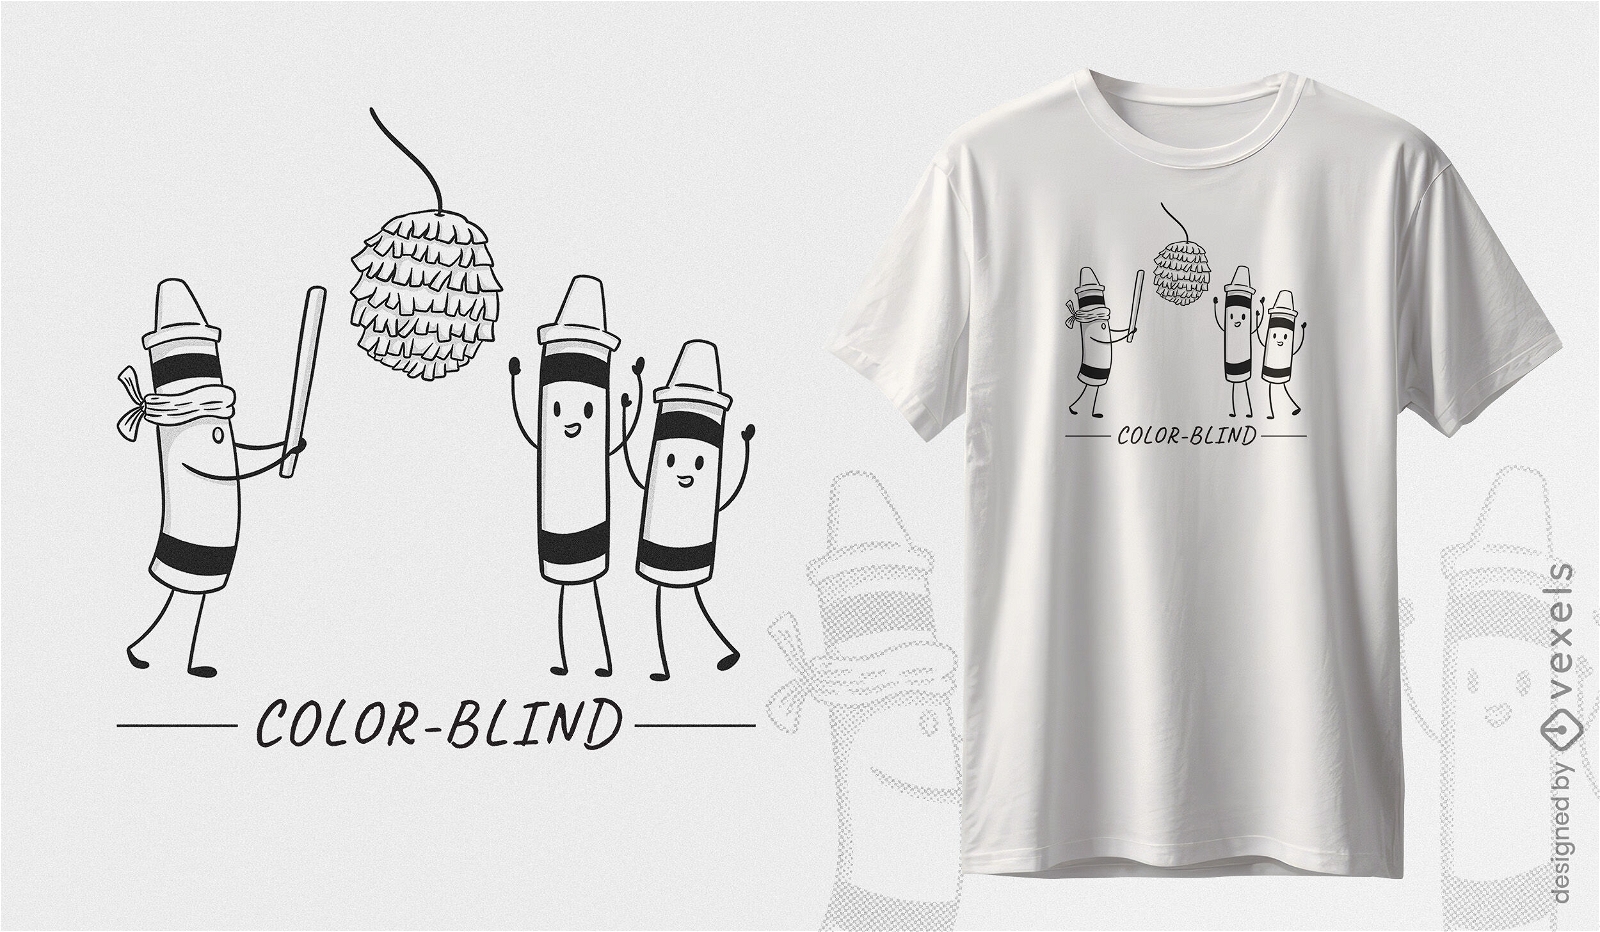 Crayons color blindness awareness t-shirt design